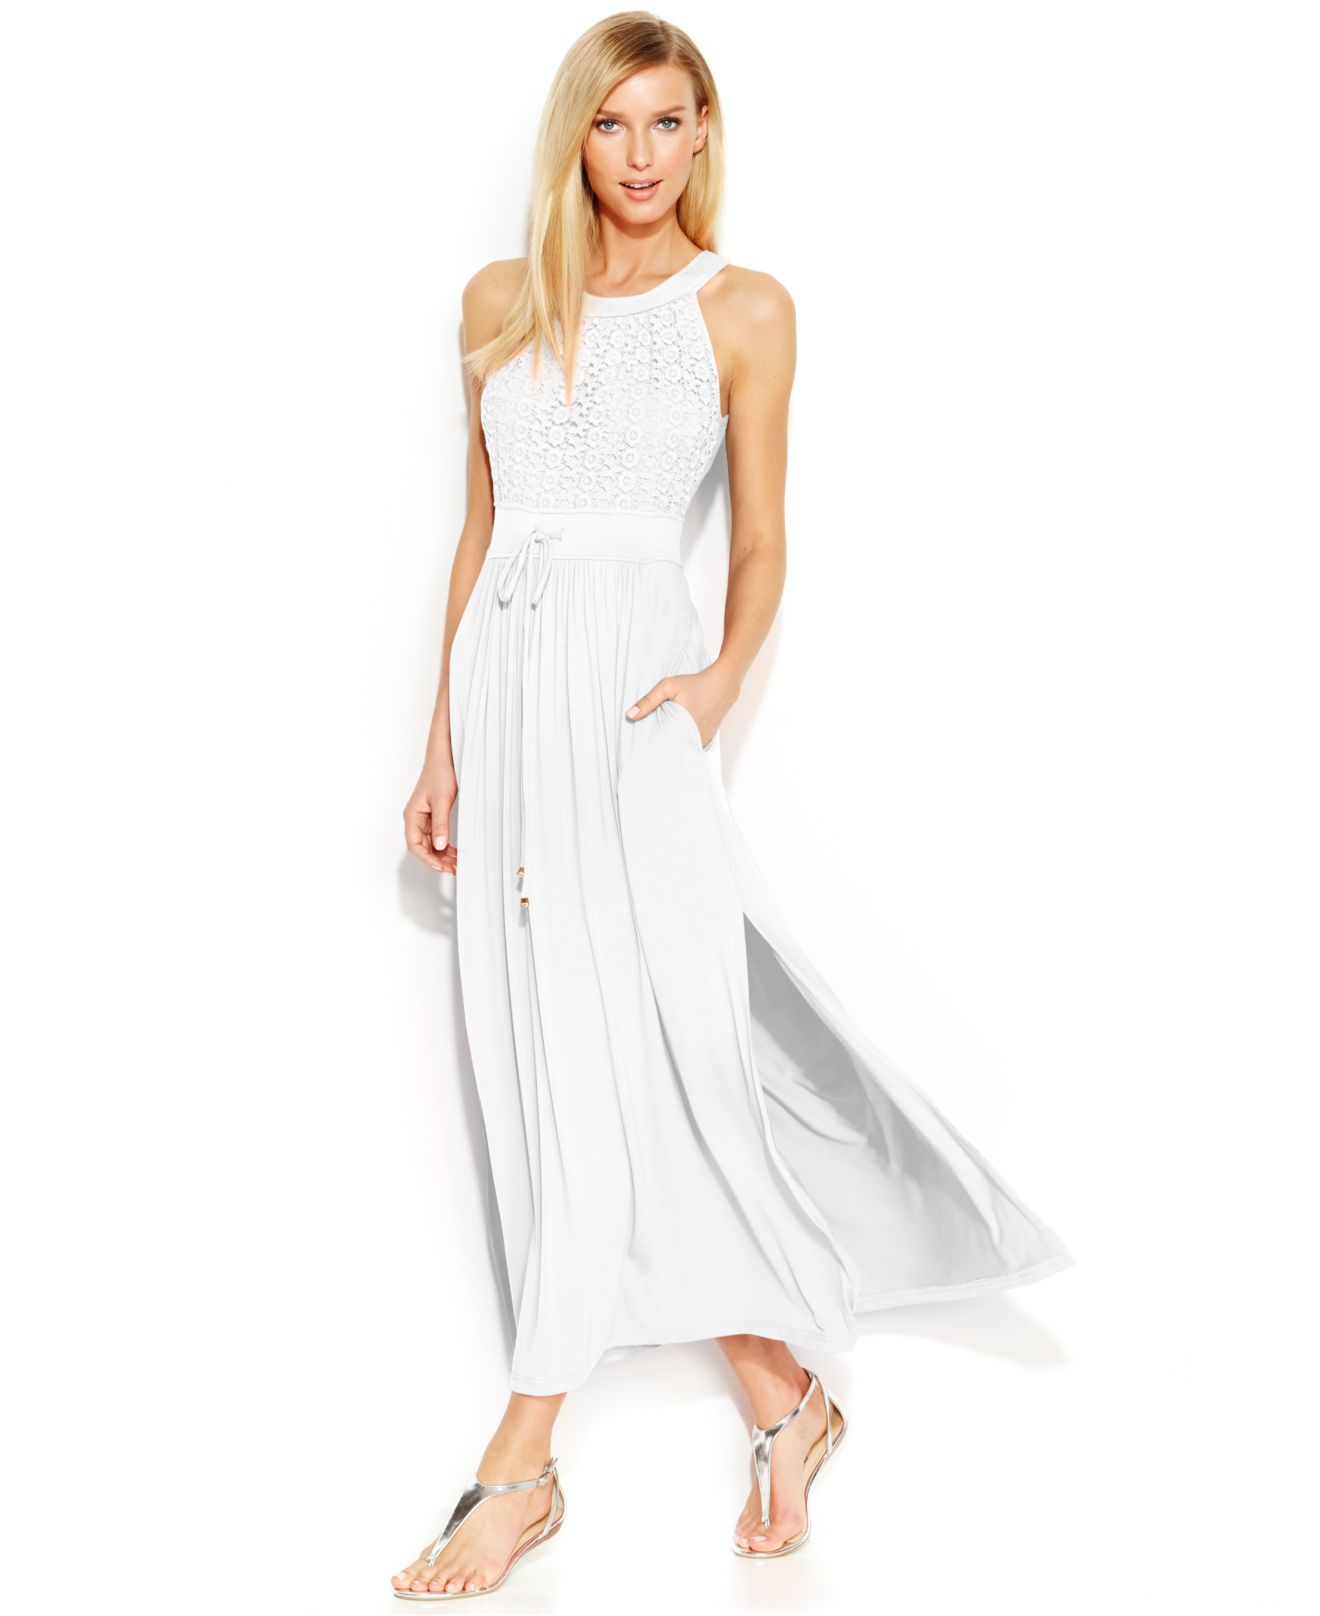 Buy > macy's calvin klein white dress > in stock